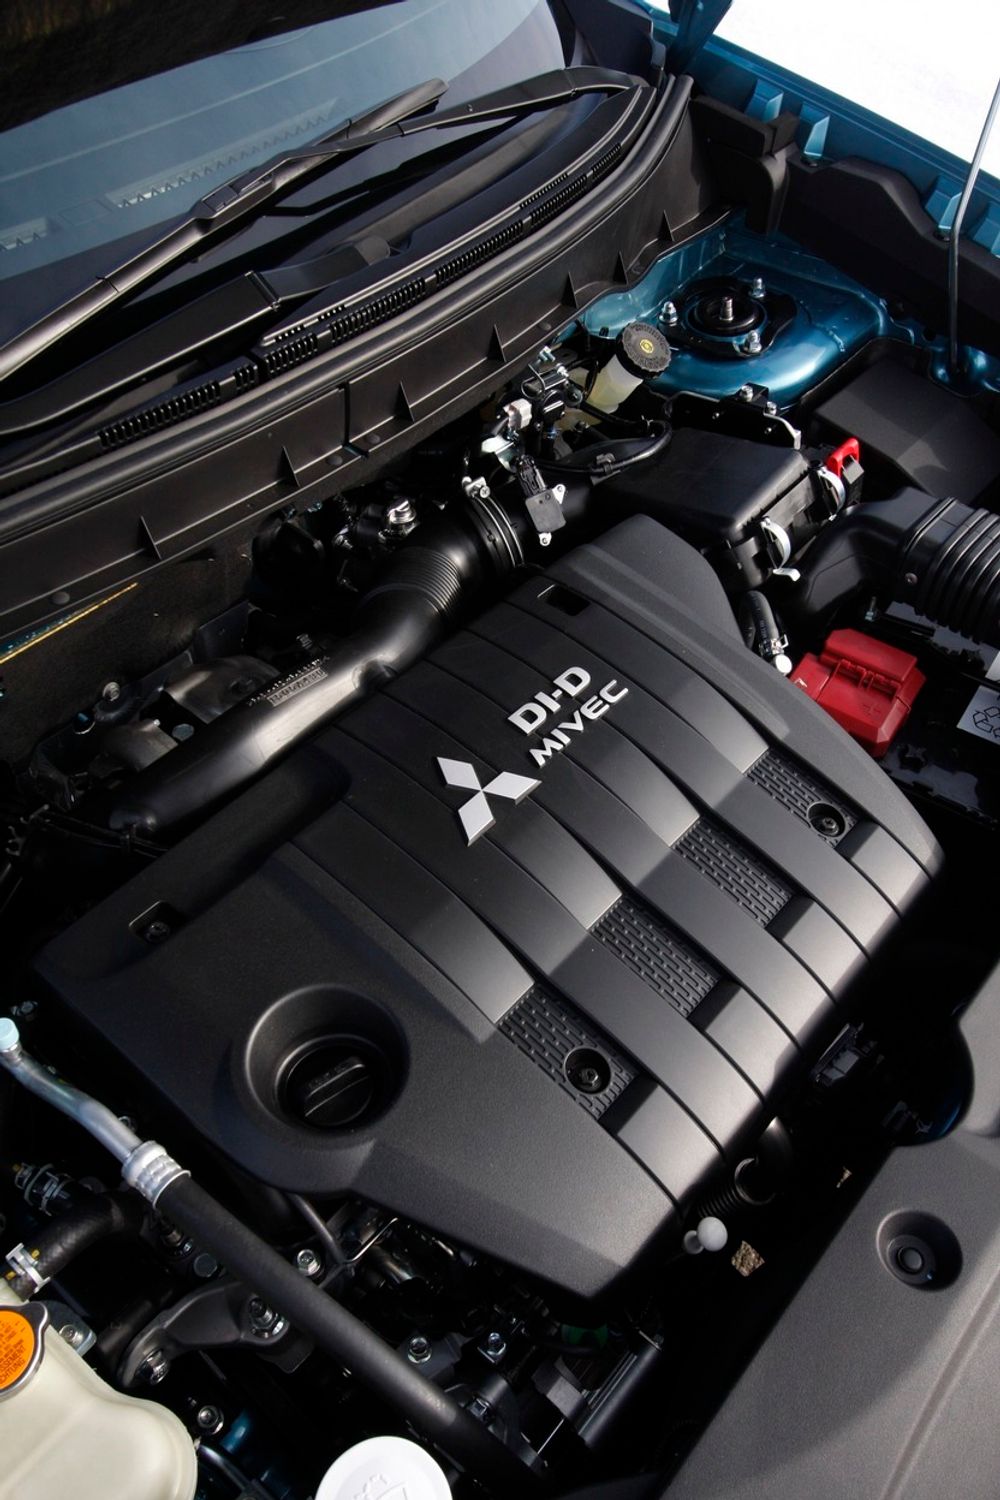 NY TEKNOLOGI: Ifølge Mitsubishi har ASX variable ventiltider, en teknologi som ikke tidligere har blitt brukt på diesel personbiler.